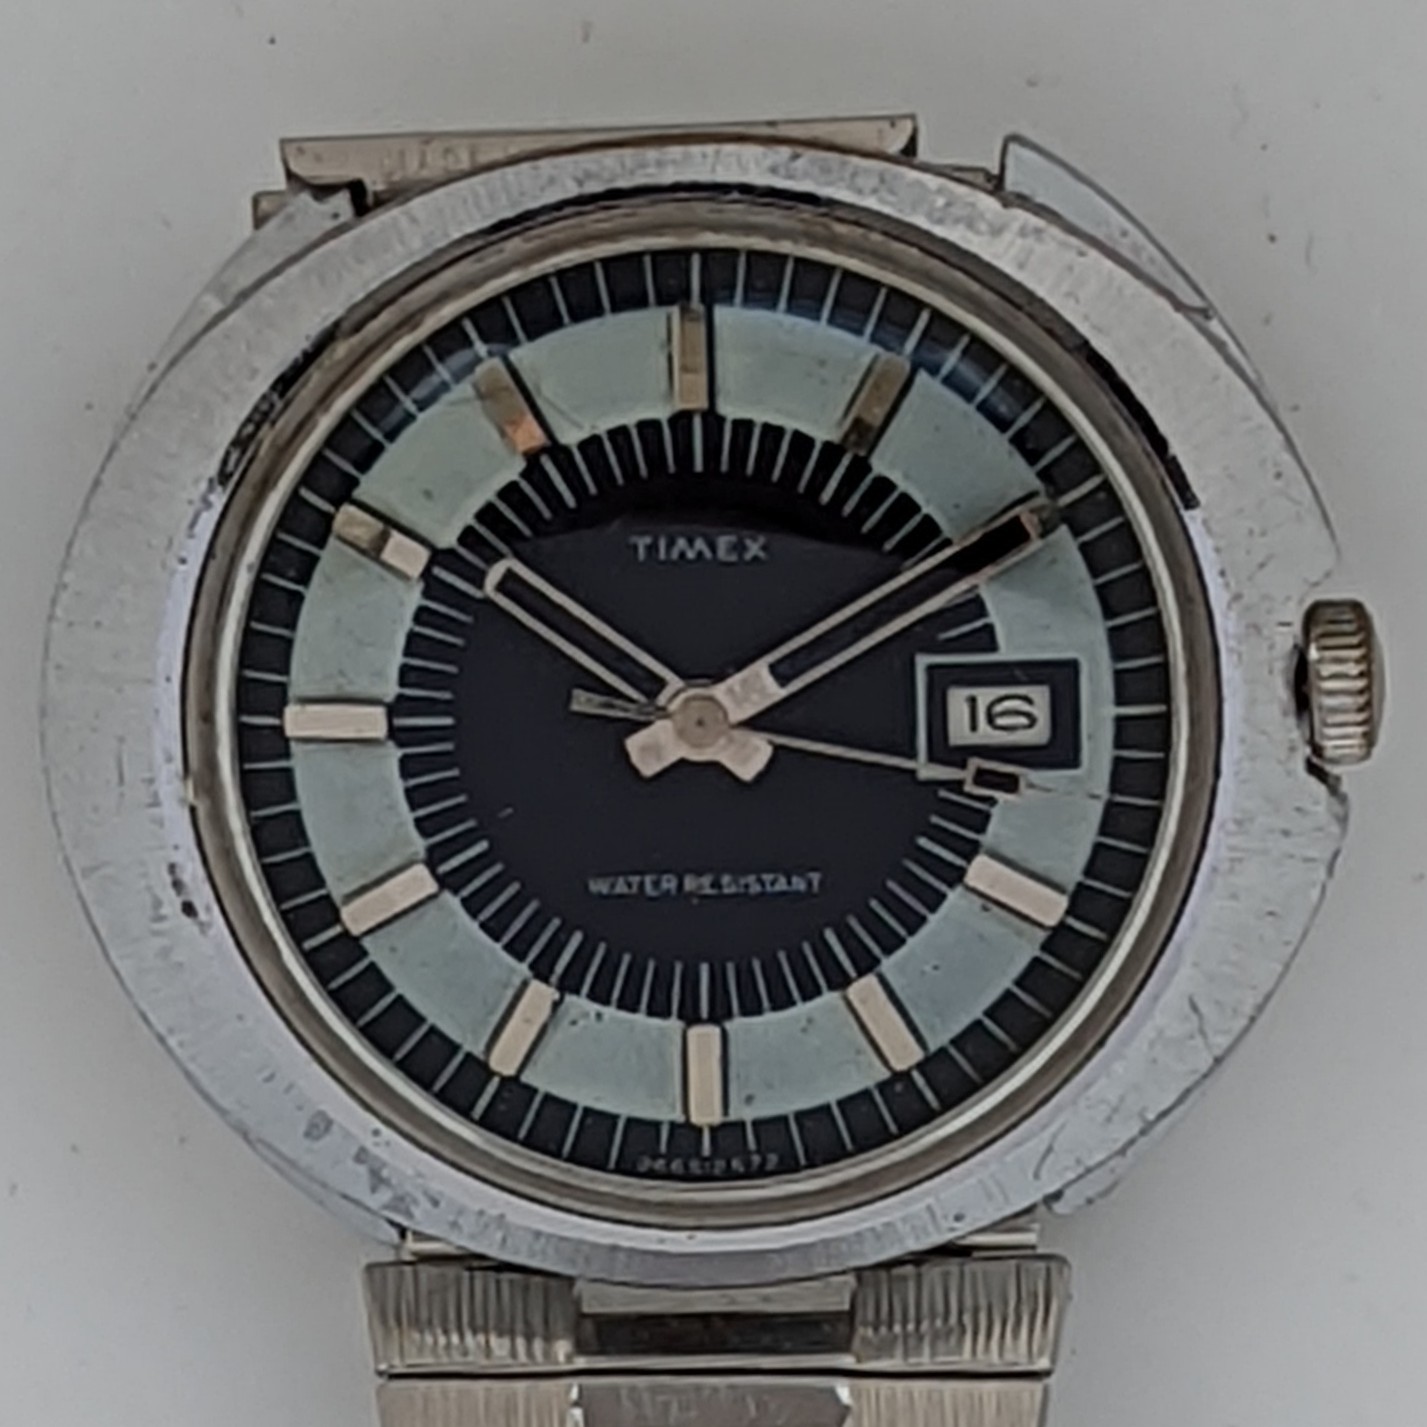 Timex Marlin 26665 2572 [1972]